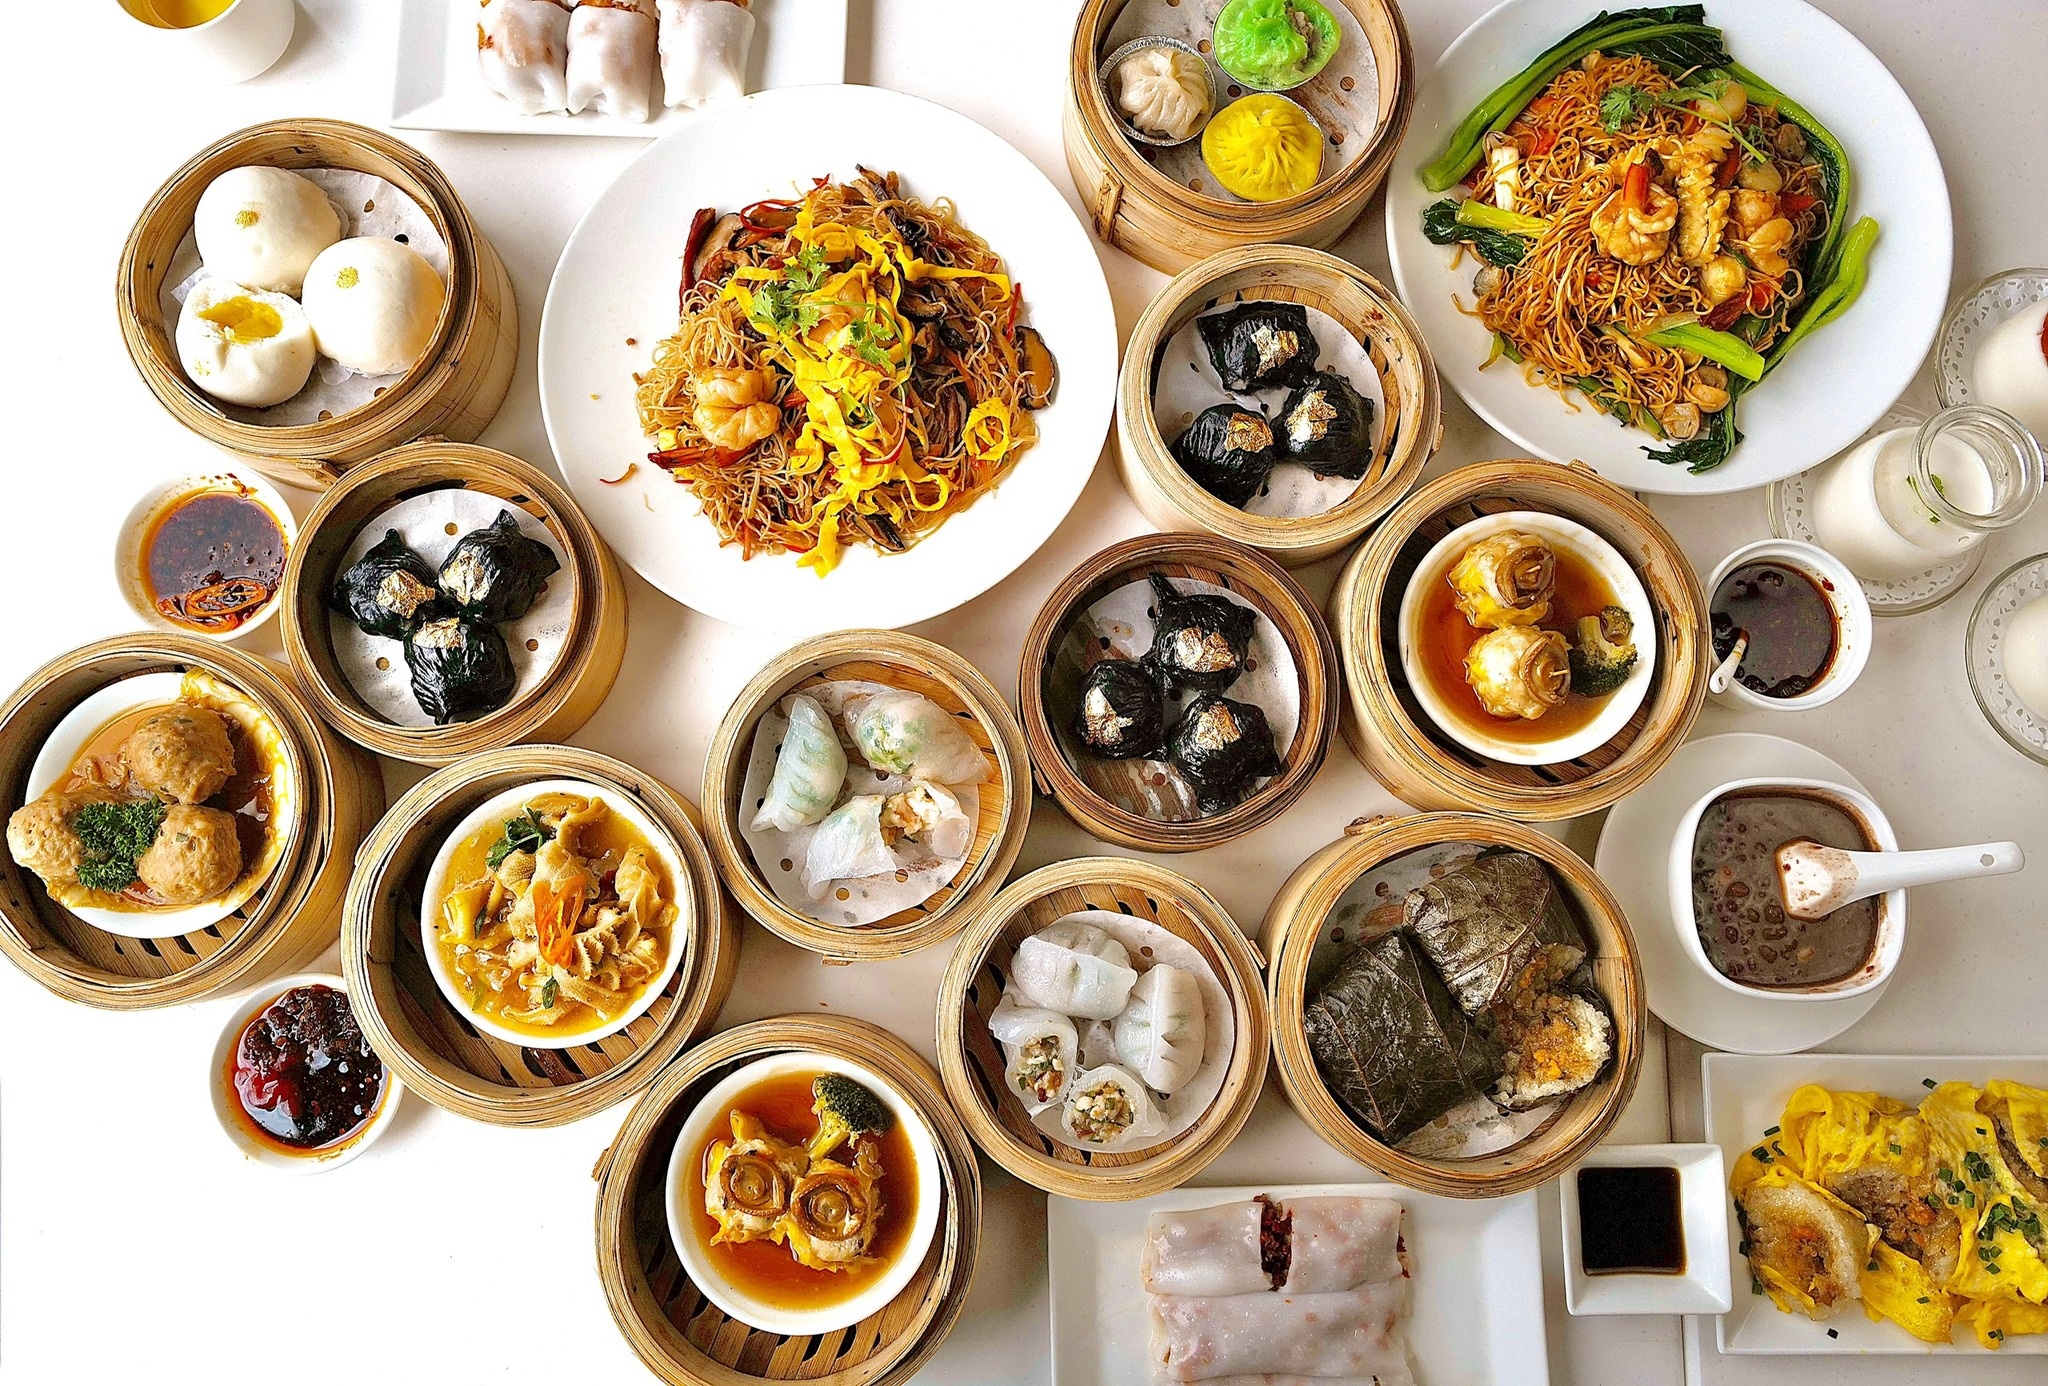 Khu ẩm thực Tây, Hàn, Nhật, Trung kín khách ngoại ở TP.HCM - ảnh 8